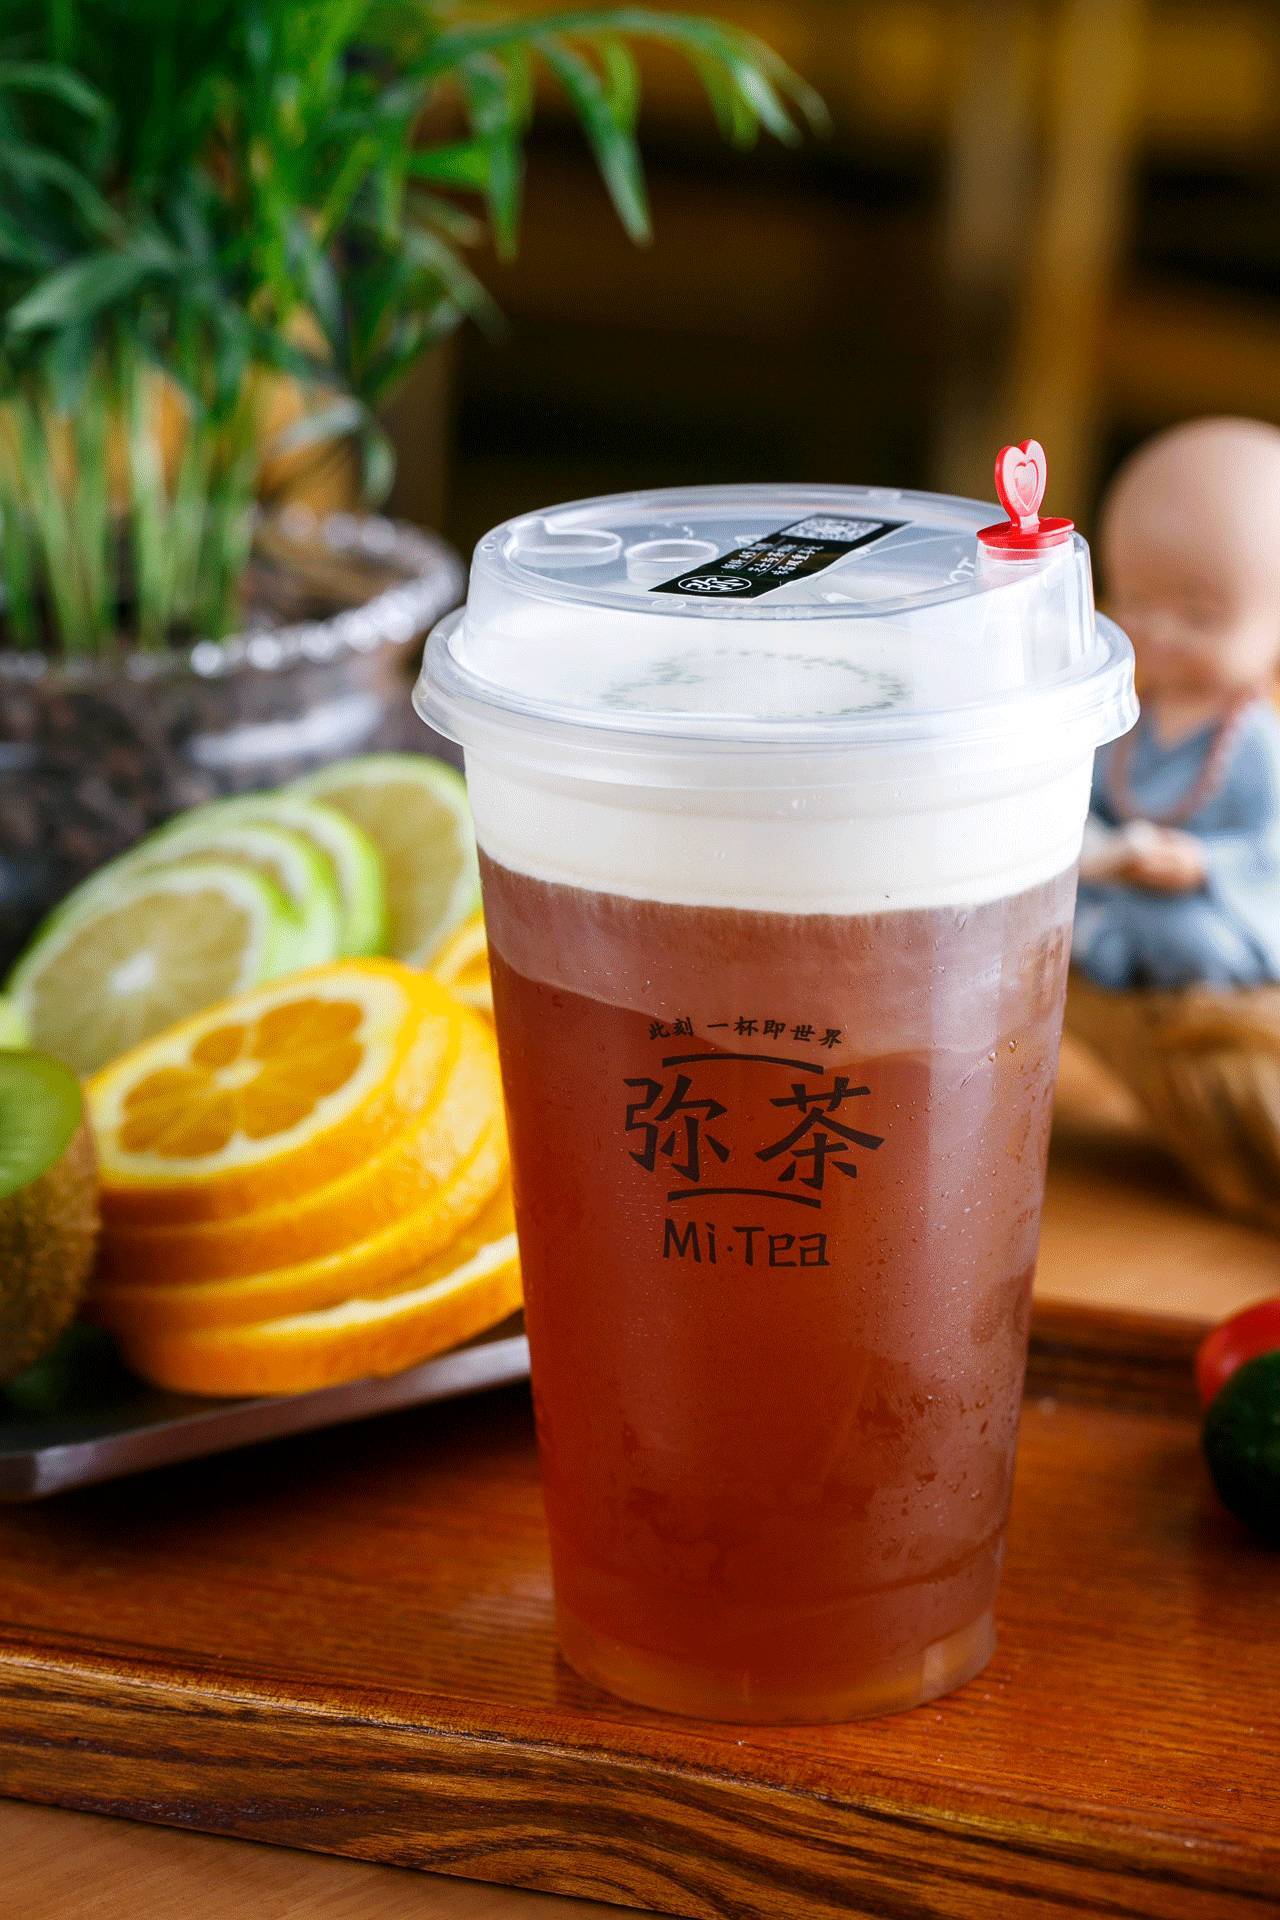 铜陵美食头条0907特刊哇号称杭州九大网红之一的弥茶强势登陆铜陵奶茶